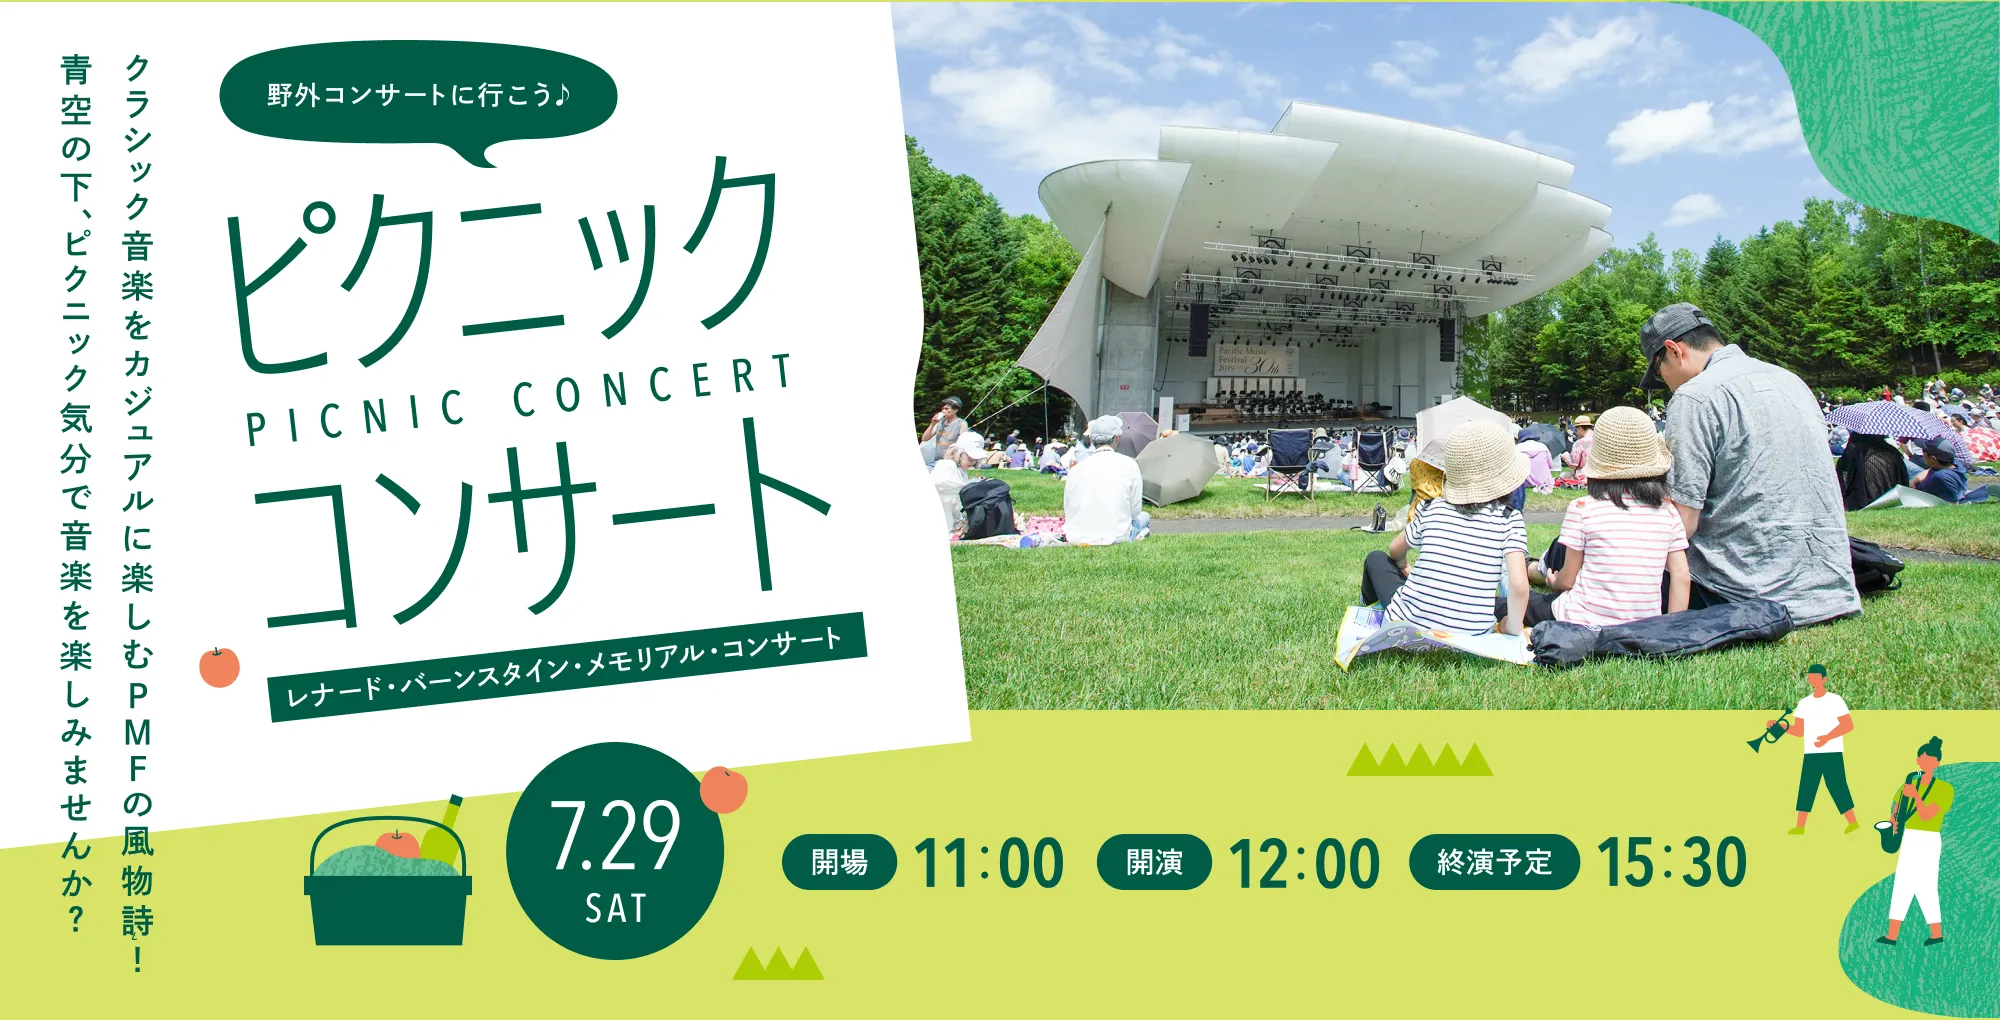 野外コンサートに行こう♪パシフィック・ミュージック・フェスティバル札幌 ピクニックコンサート＜レナード・バーンスタイン・メモリアル・コンサート＞